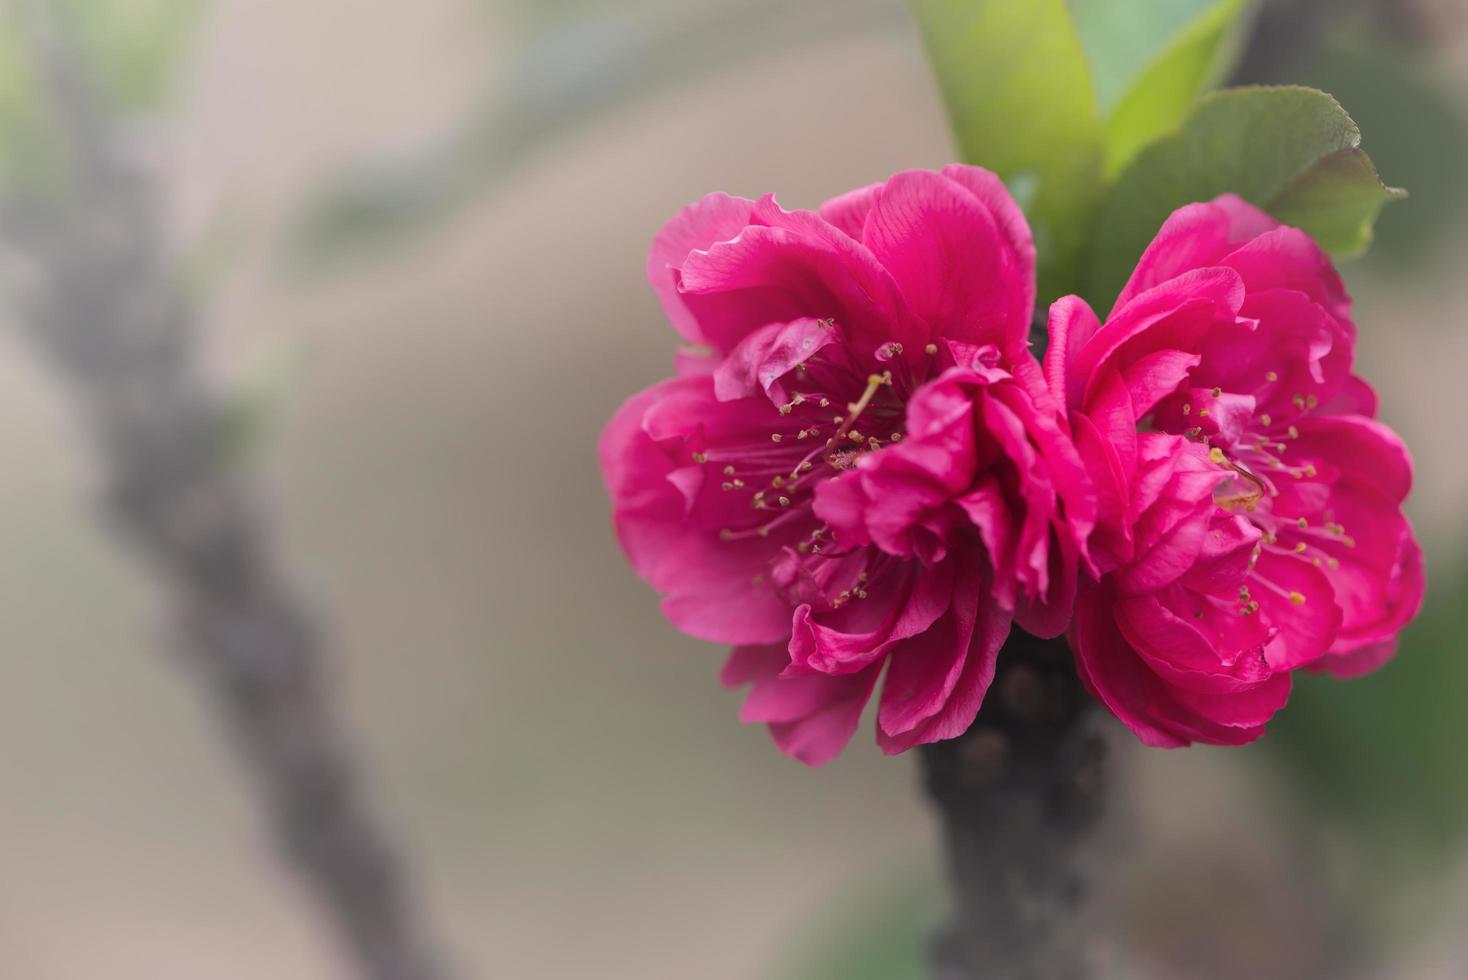 Hãy chiêm ngưỡng vẻ đẹp tuyệt vời của hoa đào hồng, khi nó khoe sắc trên màn hình của bạn. Bạn sẽ bị lôi cuốn bởi những cánh hoa khoe sắc tươi sáng, khiến bạn cảm thấy nhẹ nhàng và thư giãn hơn. 